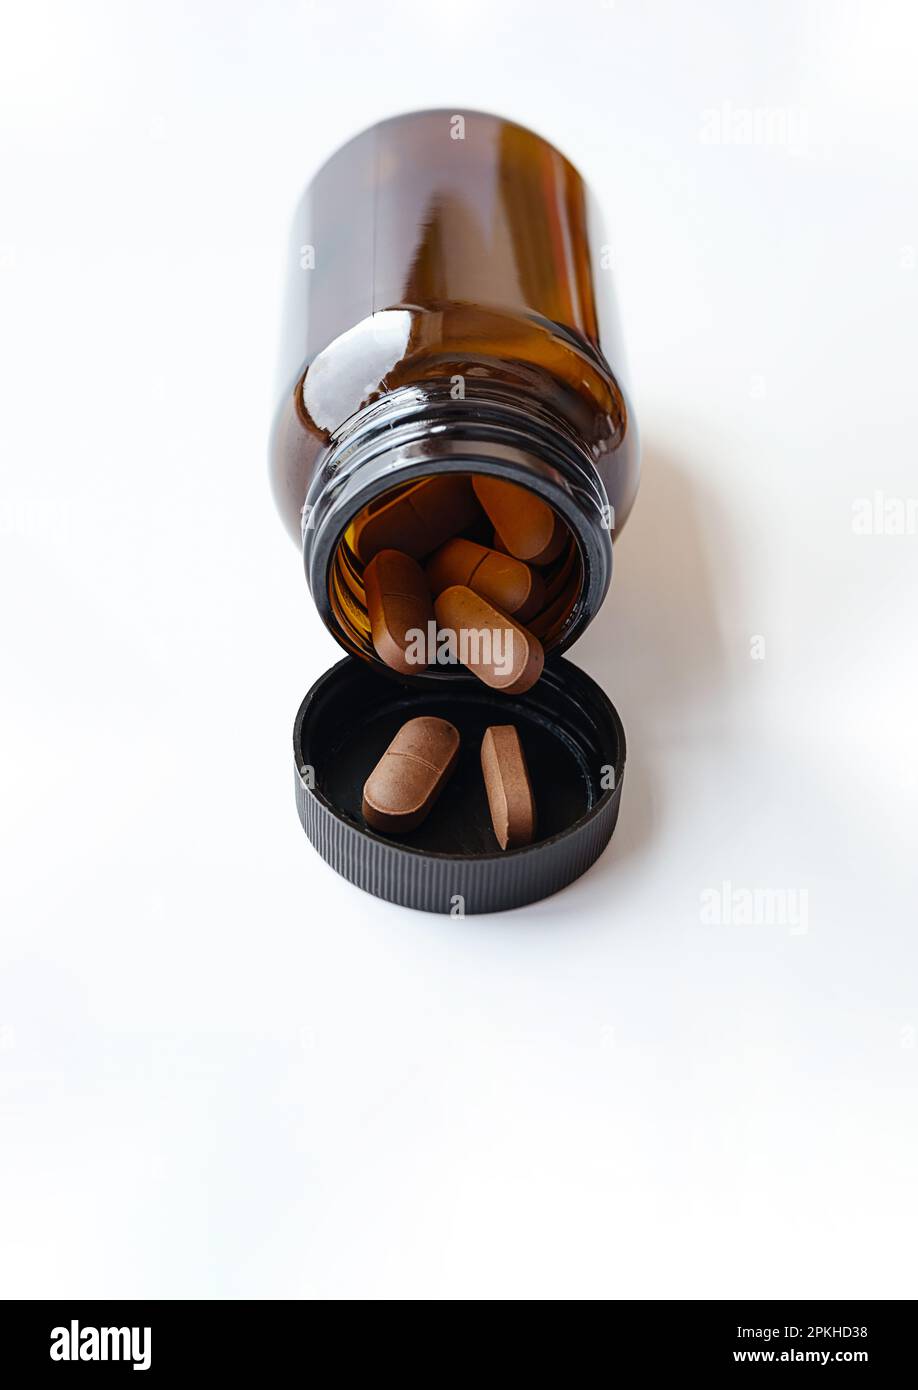 Vitaminkapseln, die Pillen aus der bernsteinfarbenen Glasflasche auf weiß auslaufen lassen. Natürliche Ergänzung für Wellness, Behandlung und Unterstützung für die Gesundheit. Stockfoto